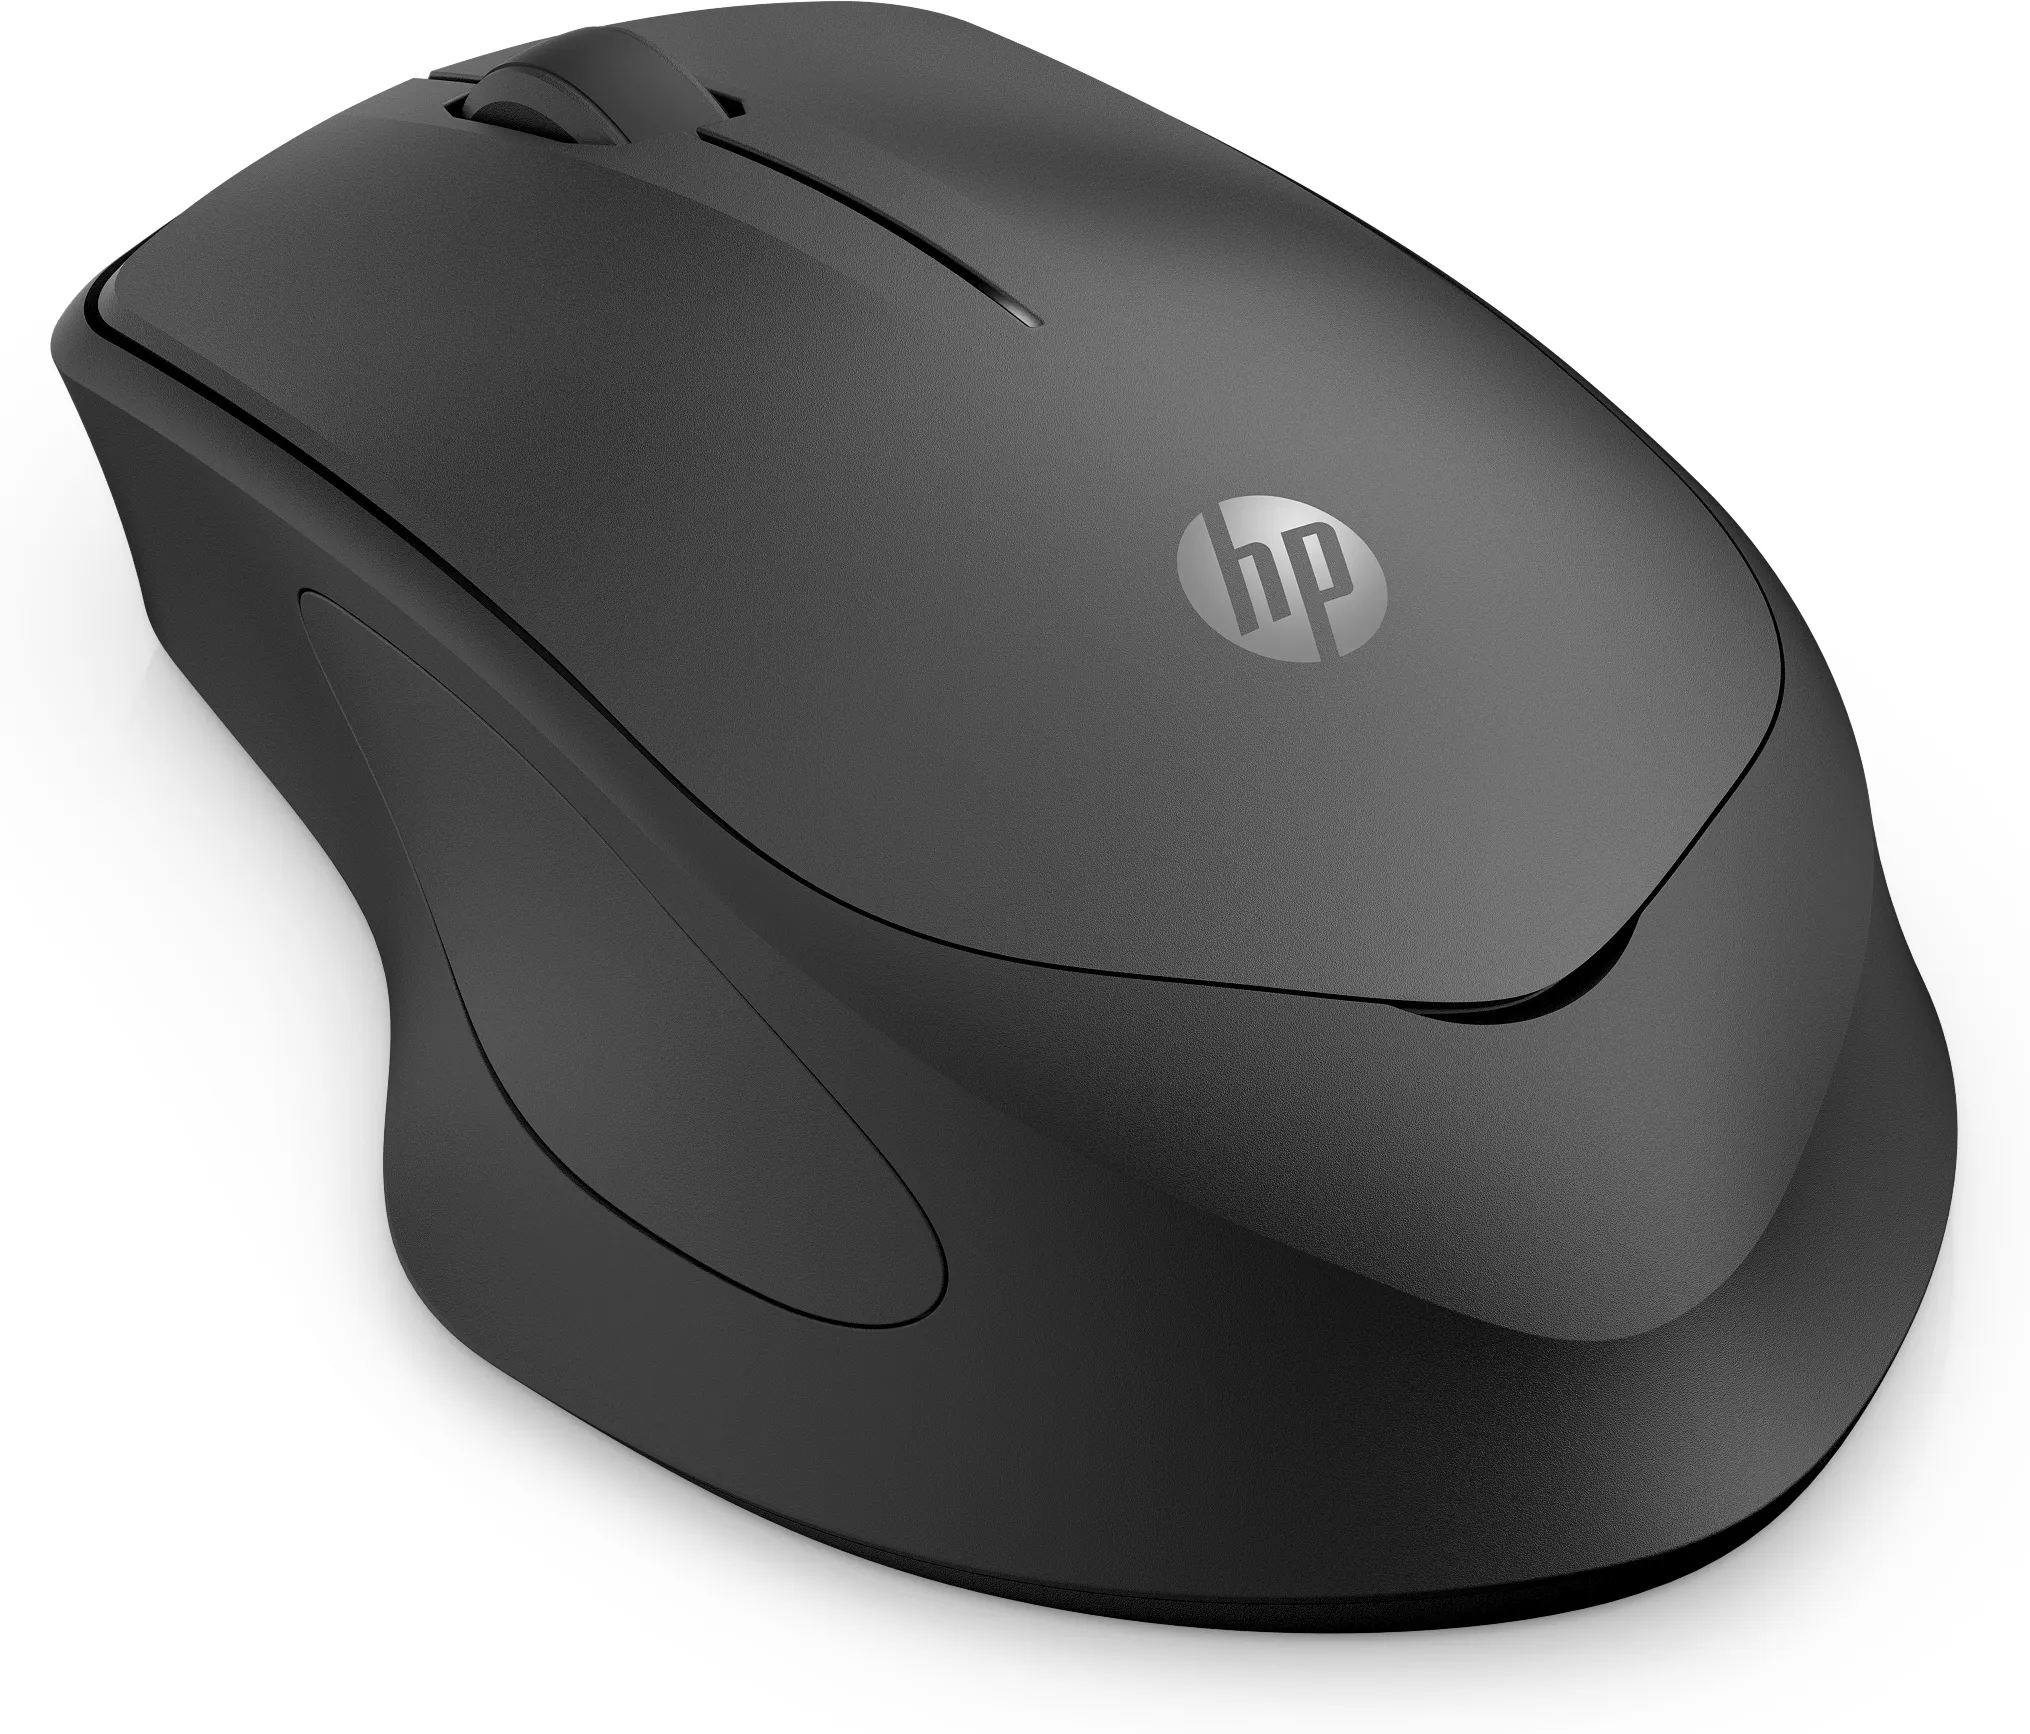 Vente HP 285 Silent Wireless Mouse HP au meilleur prix - visuel 2